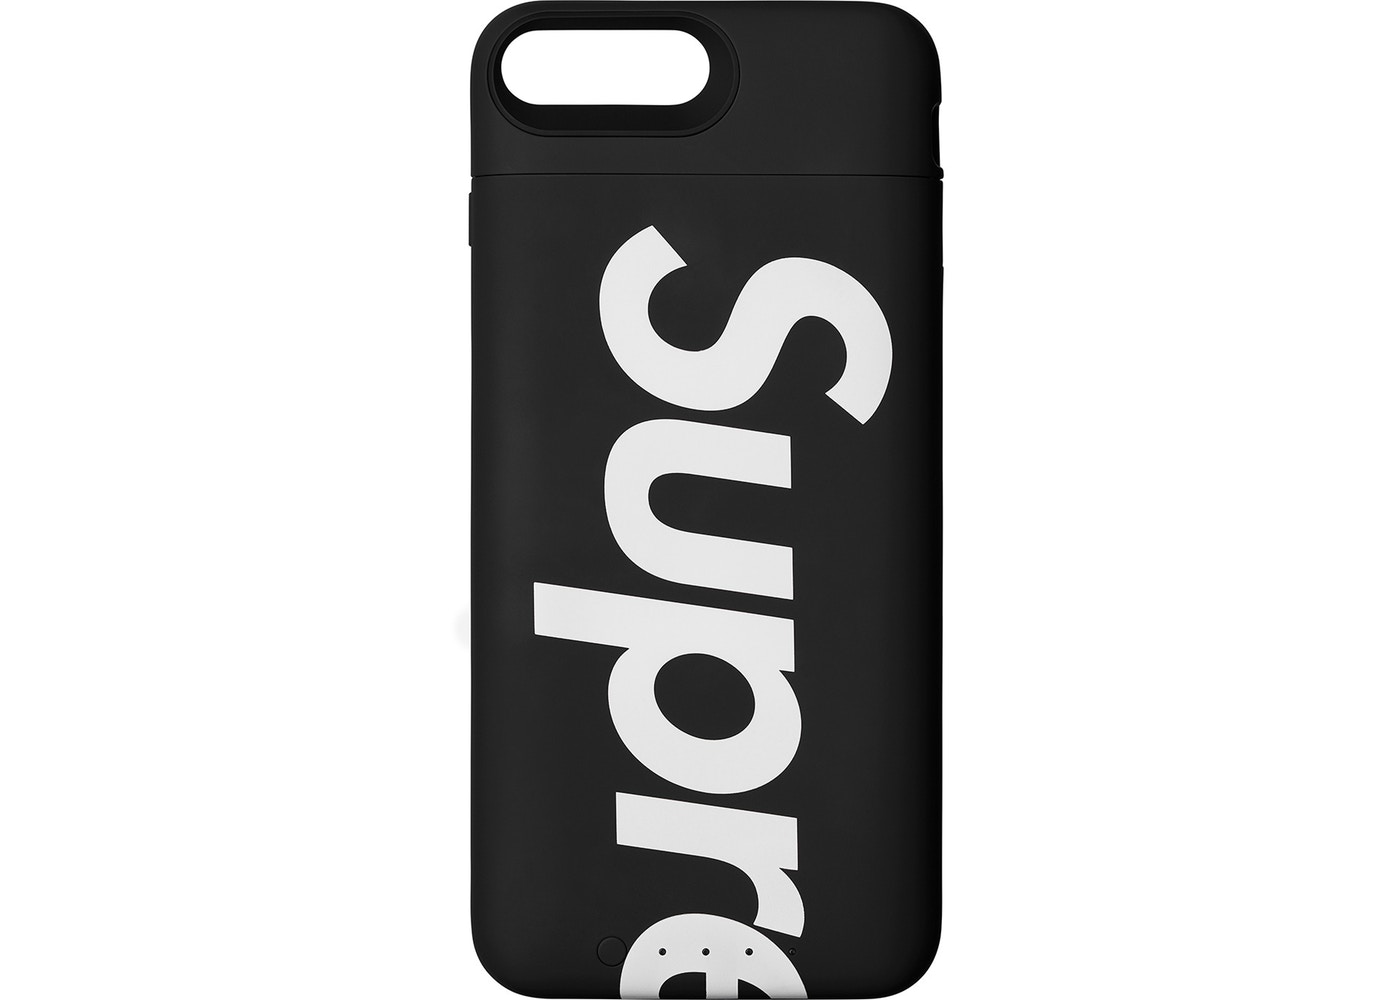 Supreme iPhone 8 Plus Juice Pack Airスマホアクセサリー - iPhoneケース